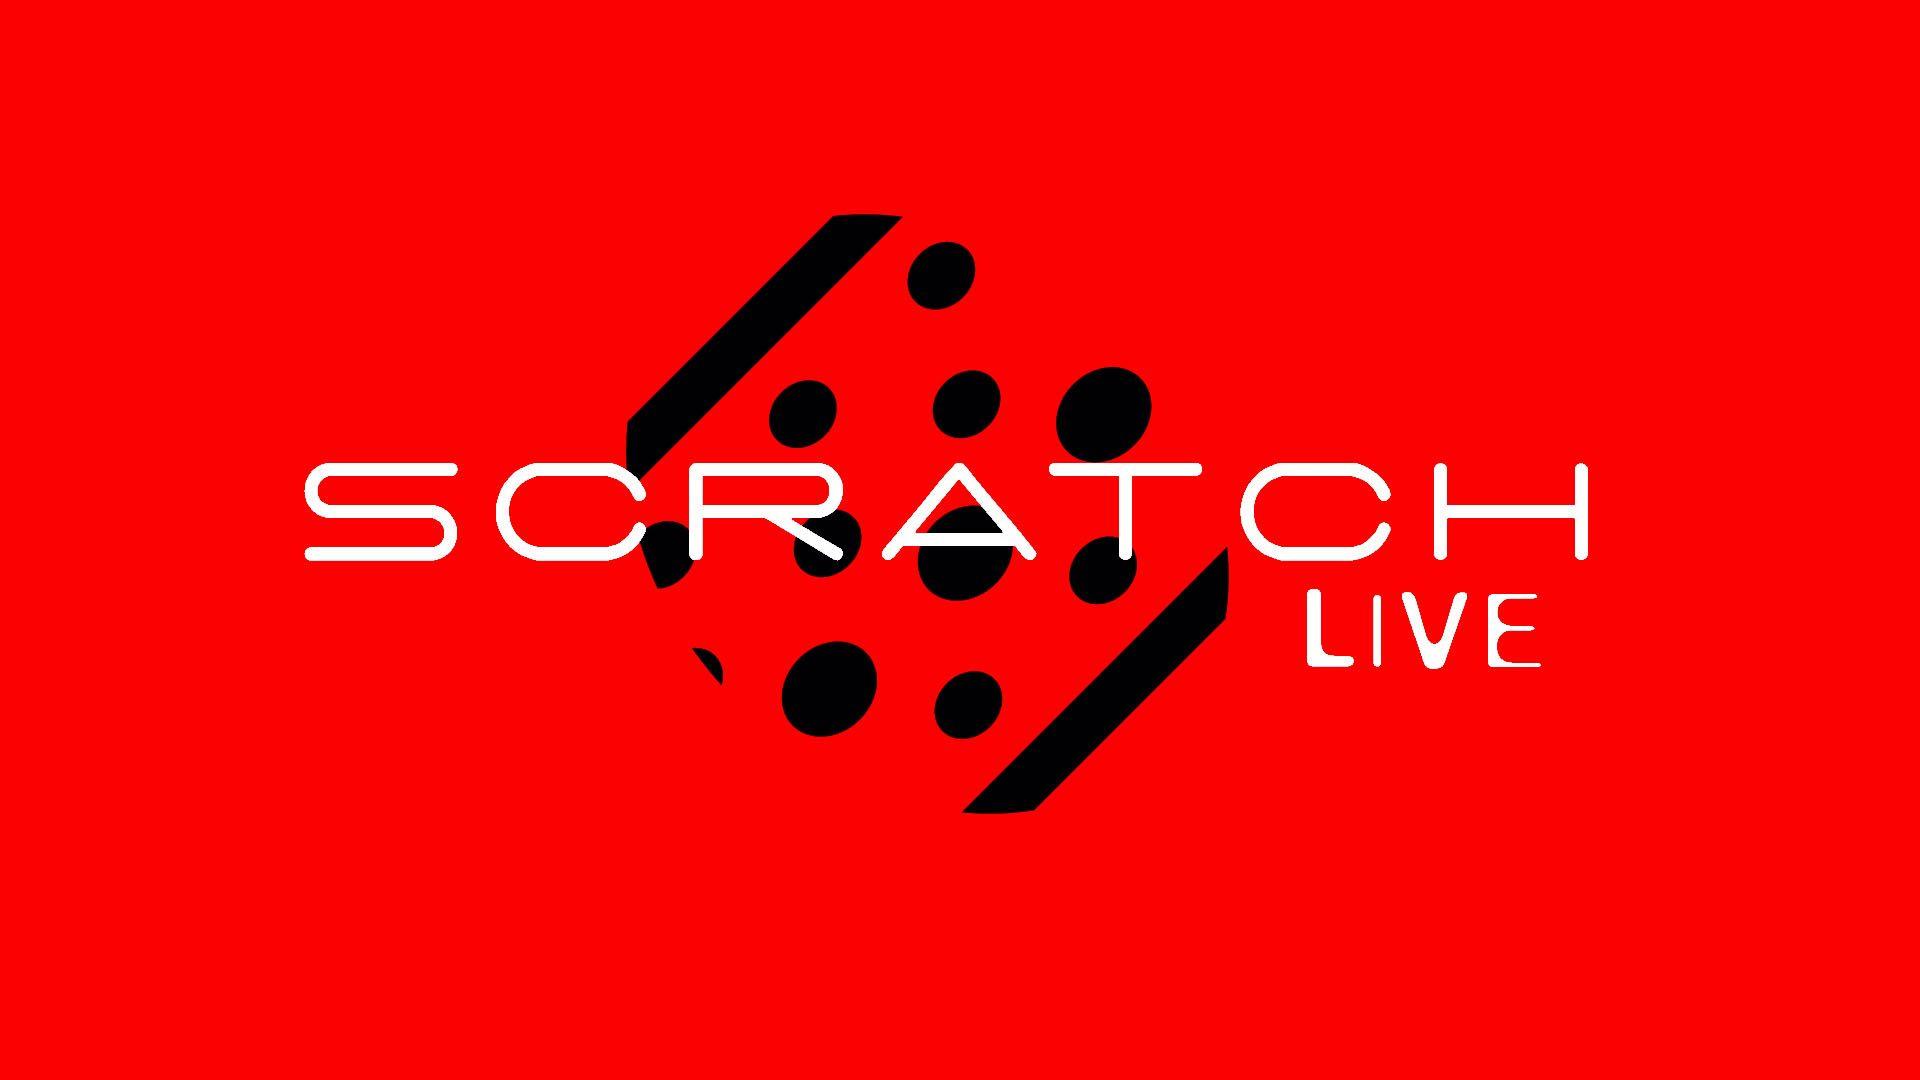 serrato scratch live